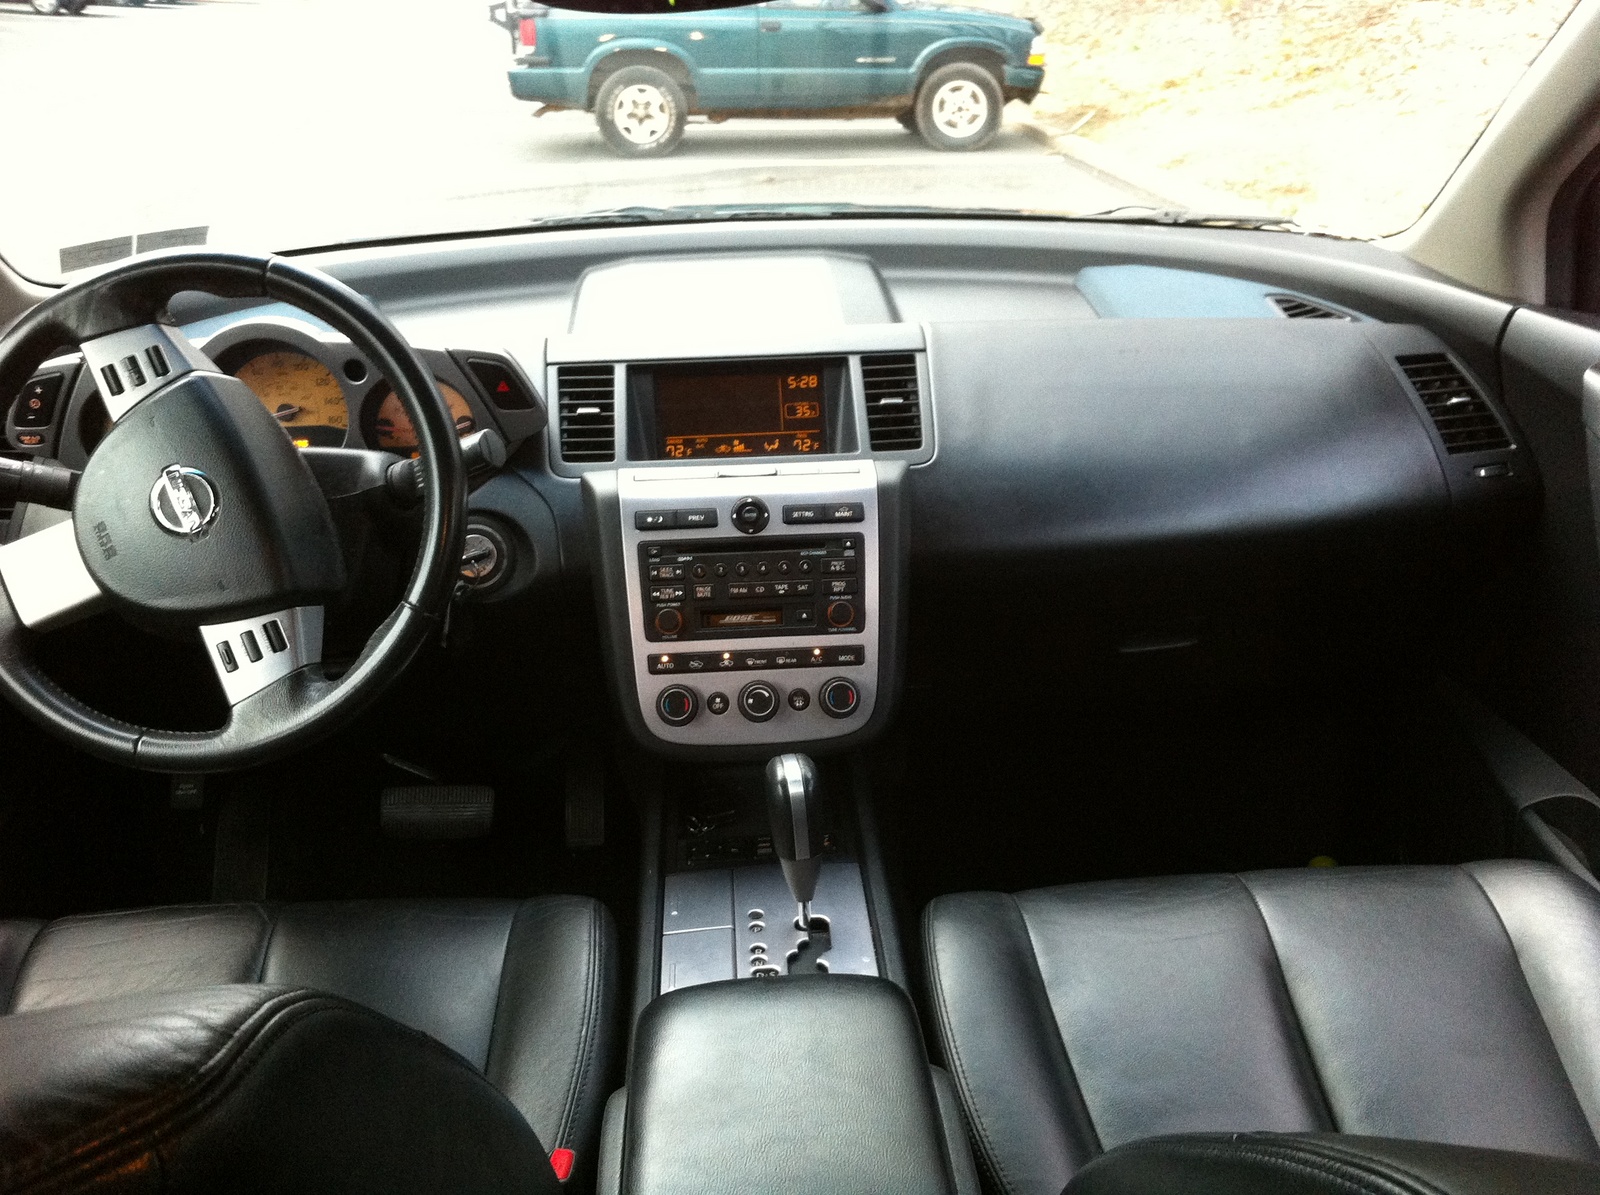 2004 Nissan murano interior dimensions #9